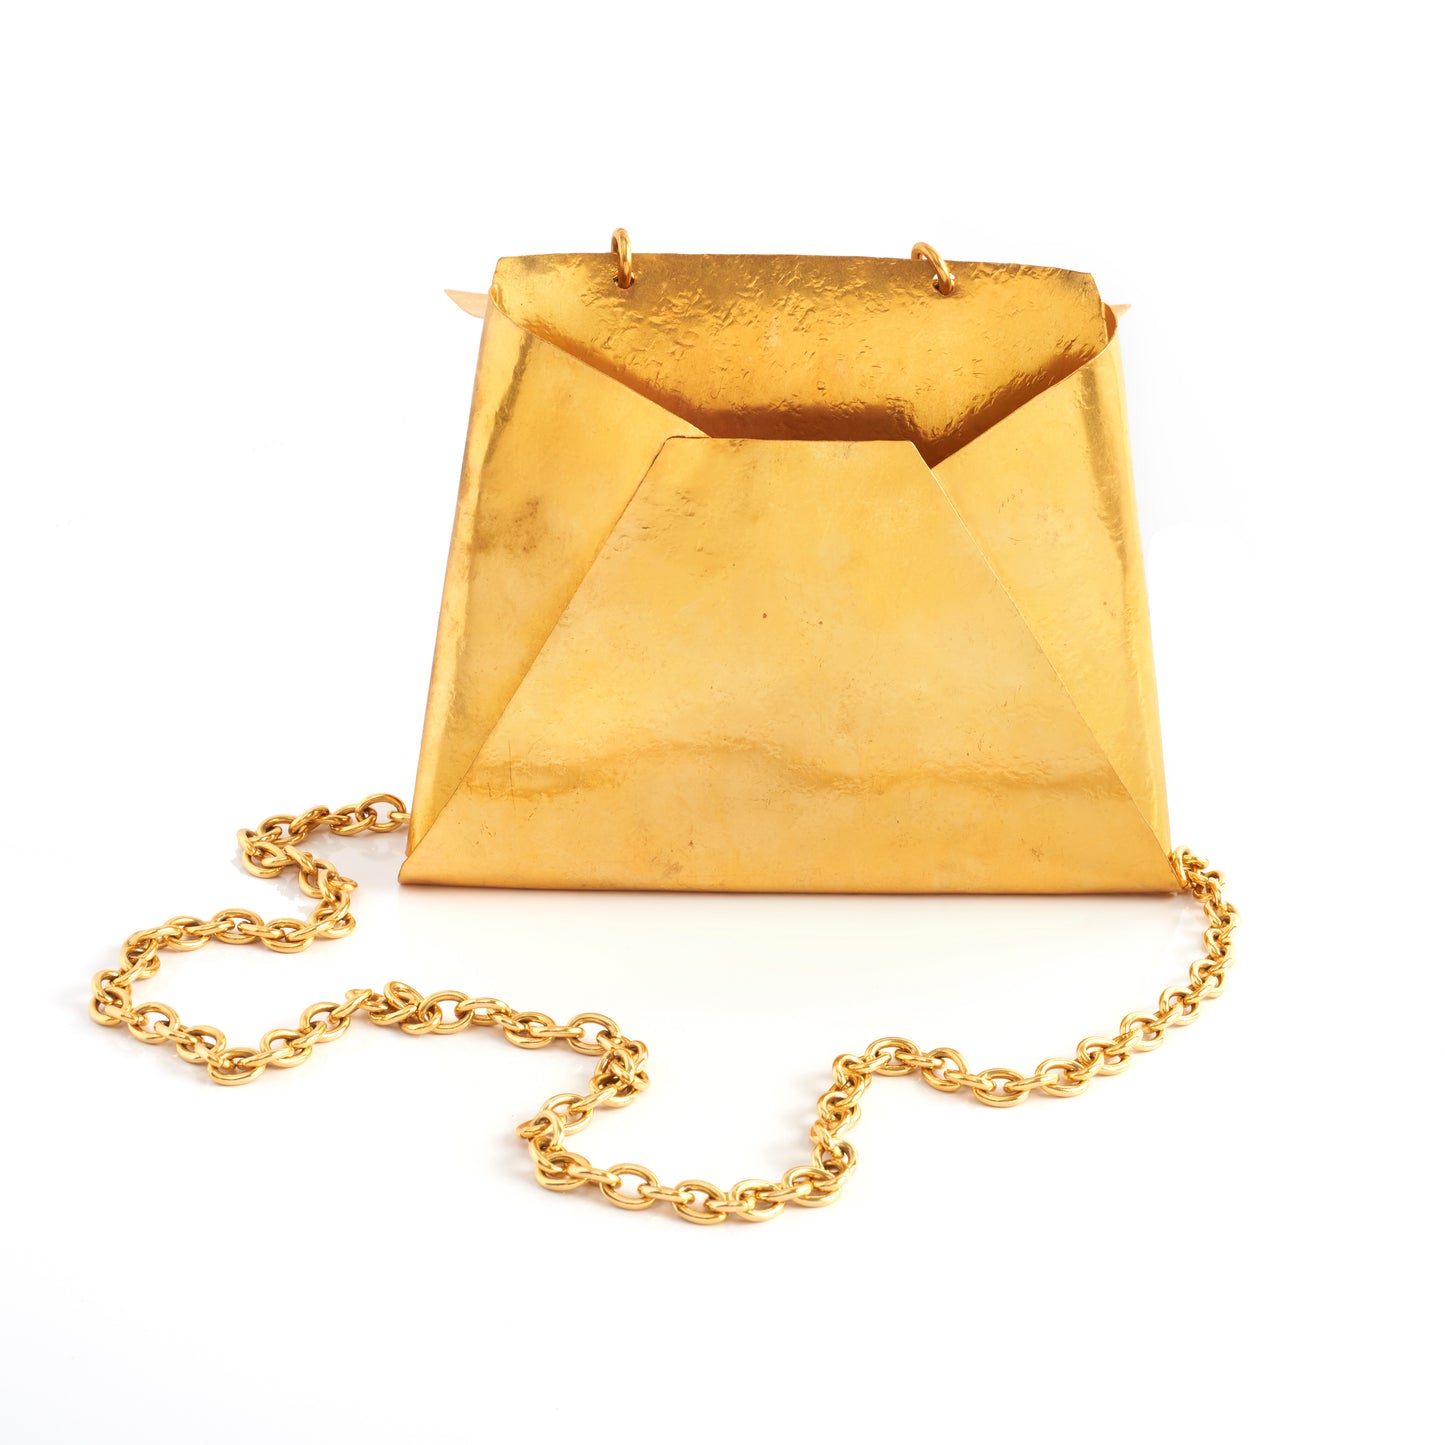 Vintage Sonia Rykiel Metal Handbag